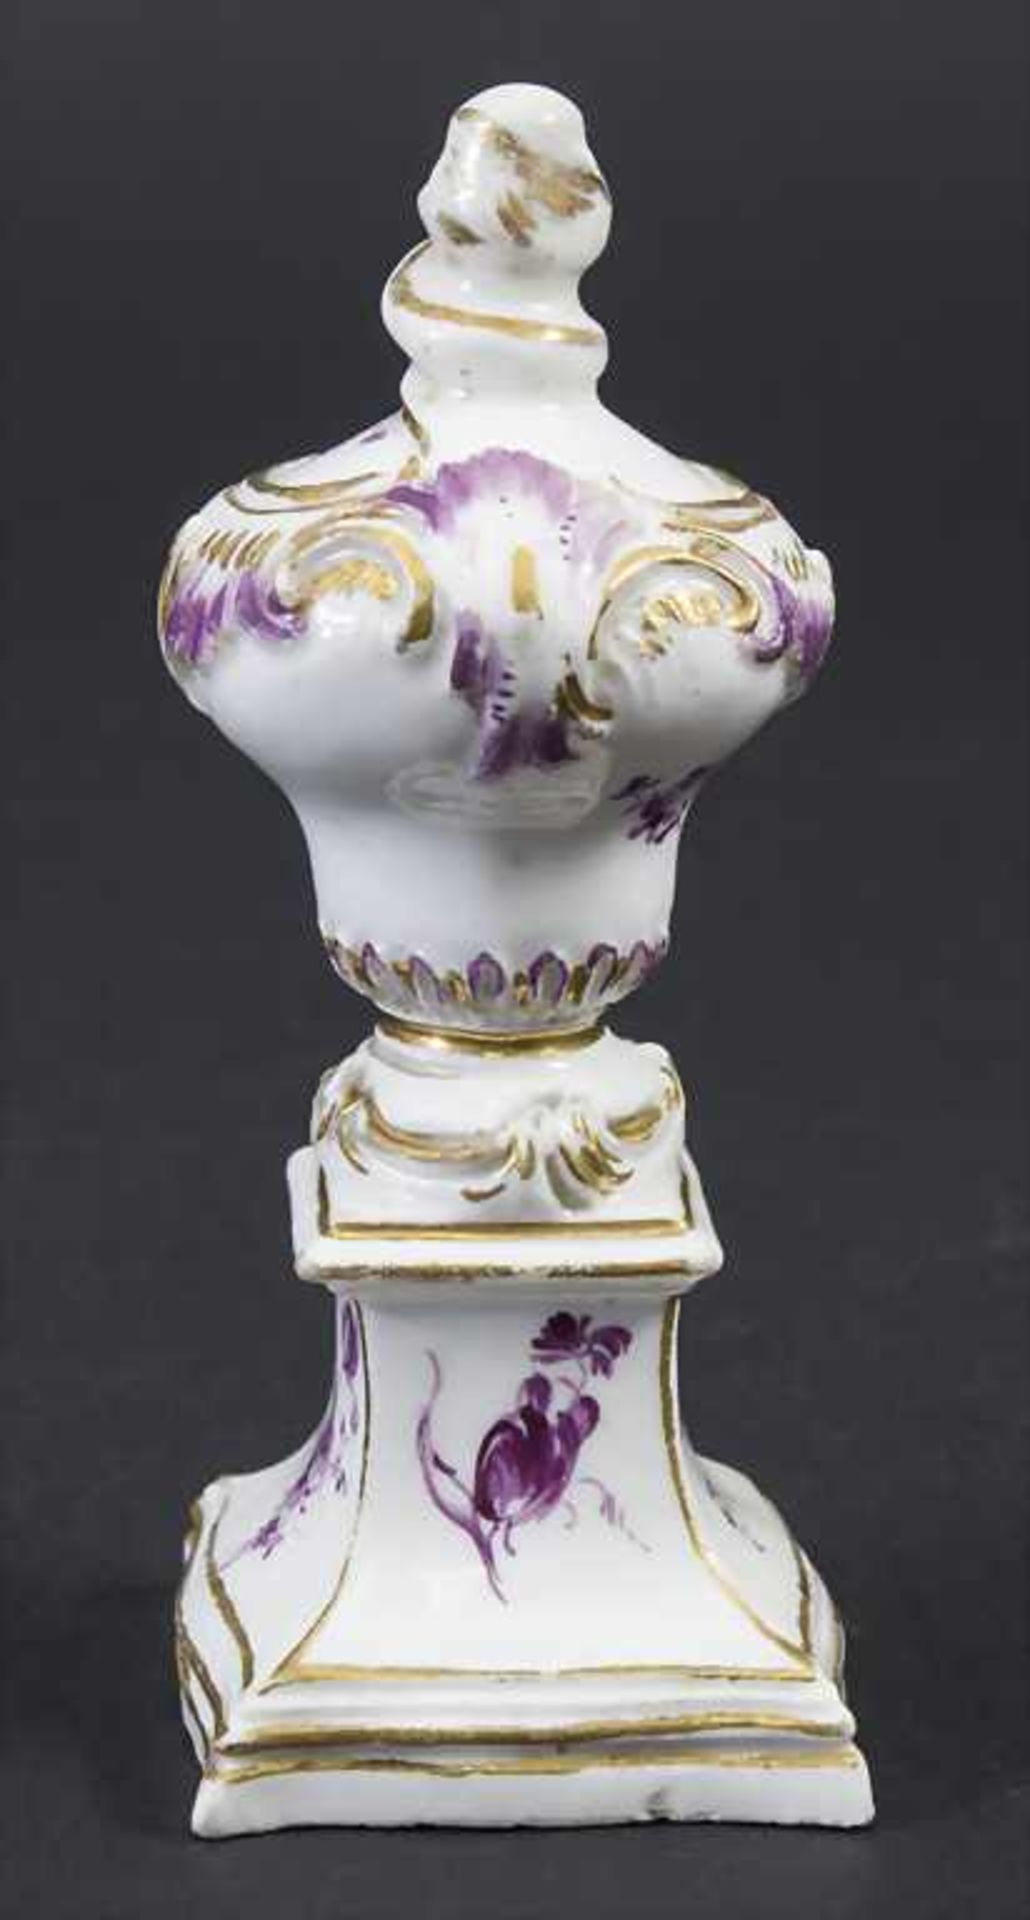 Kleine Tischdekoration / Ziervase / A small decorative vase, Höchst, um 1760 - Image 3 of 7